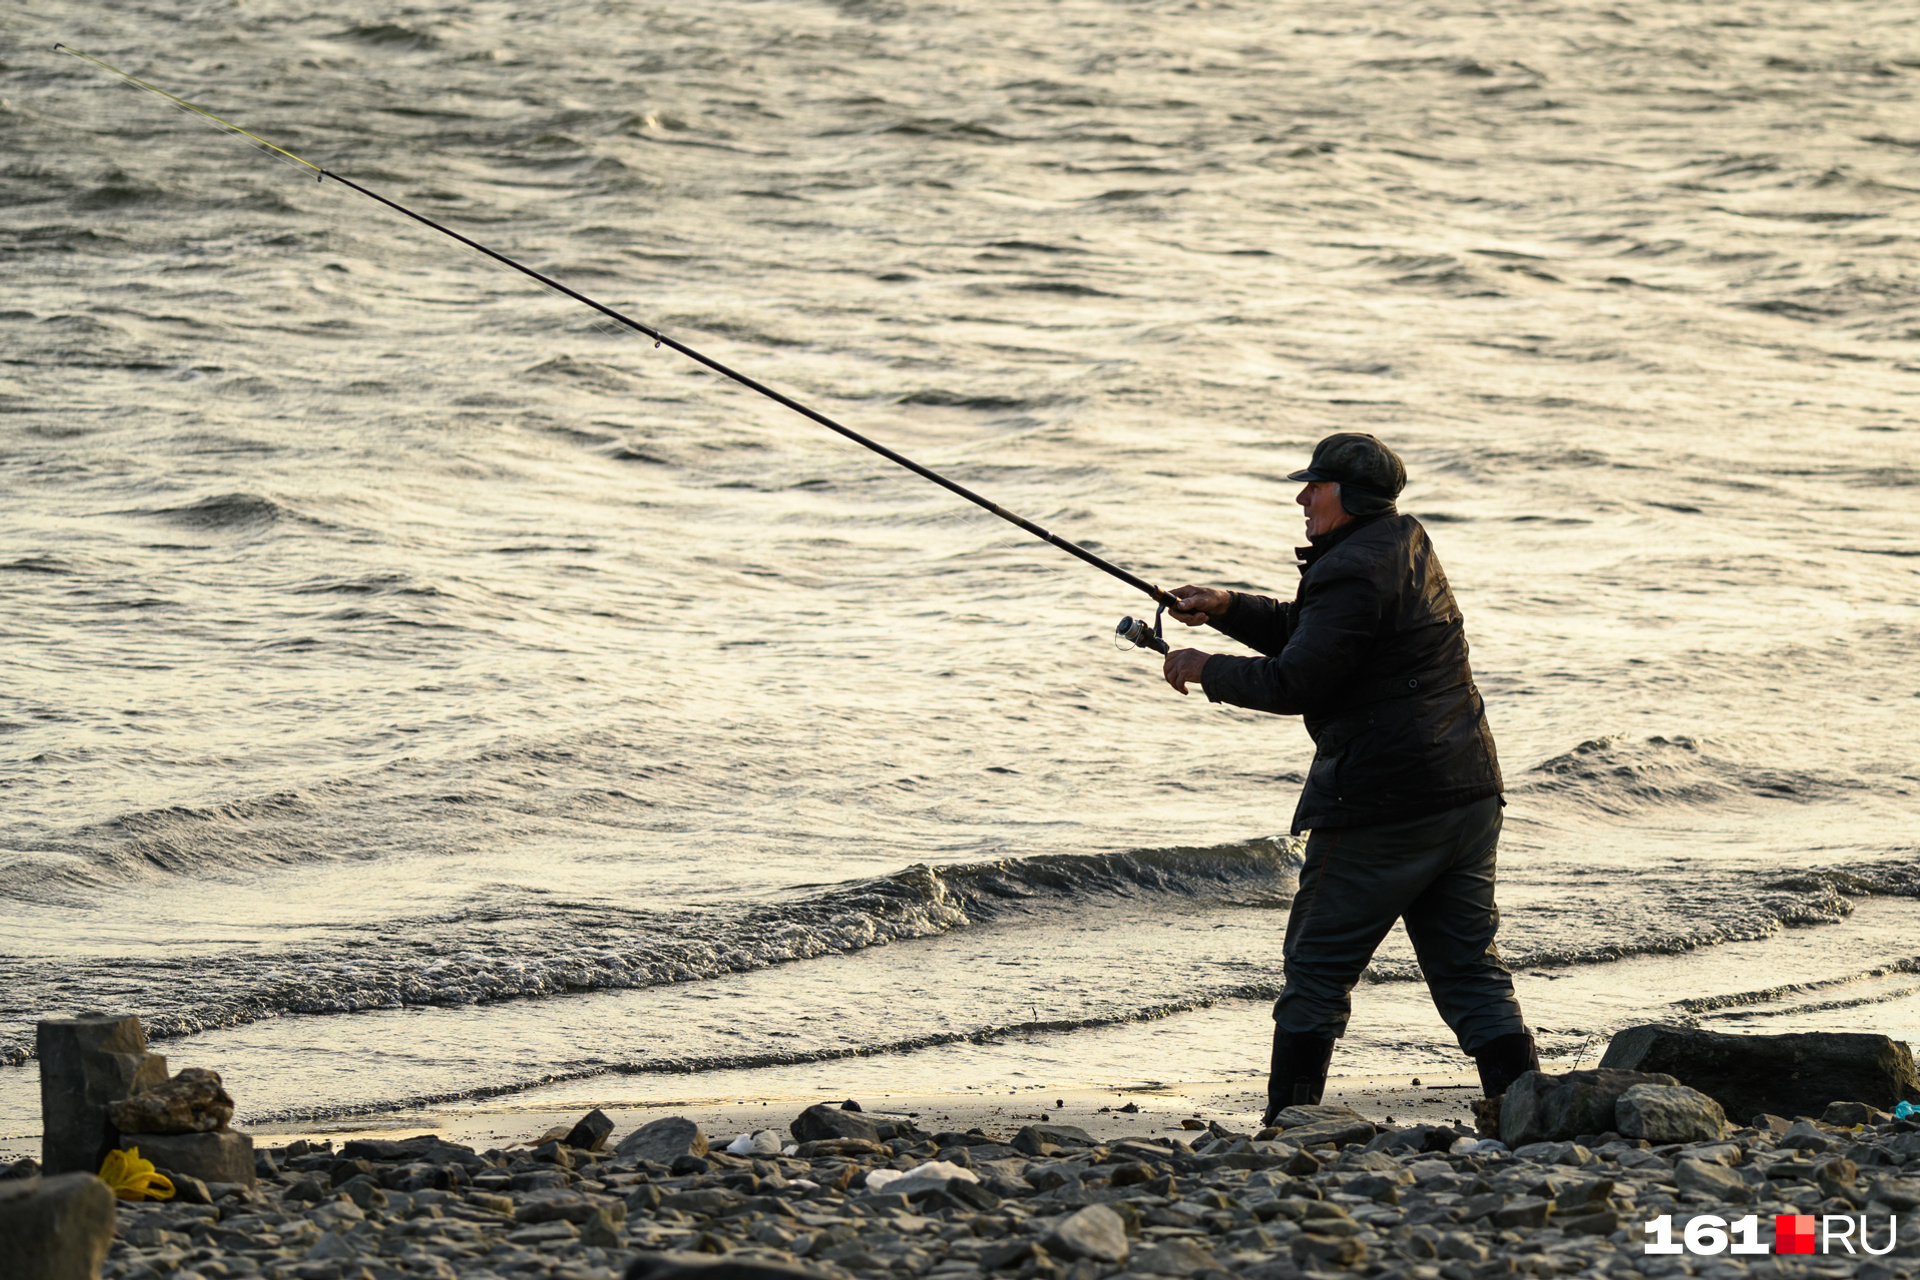 Рыбалка на Дону сейчас: актуальные новости и рекомендации